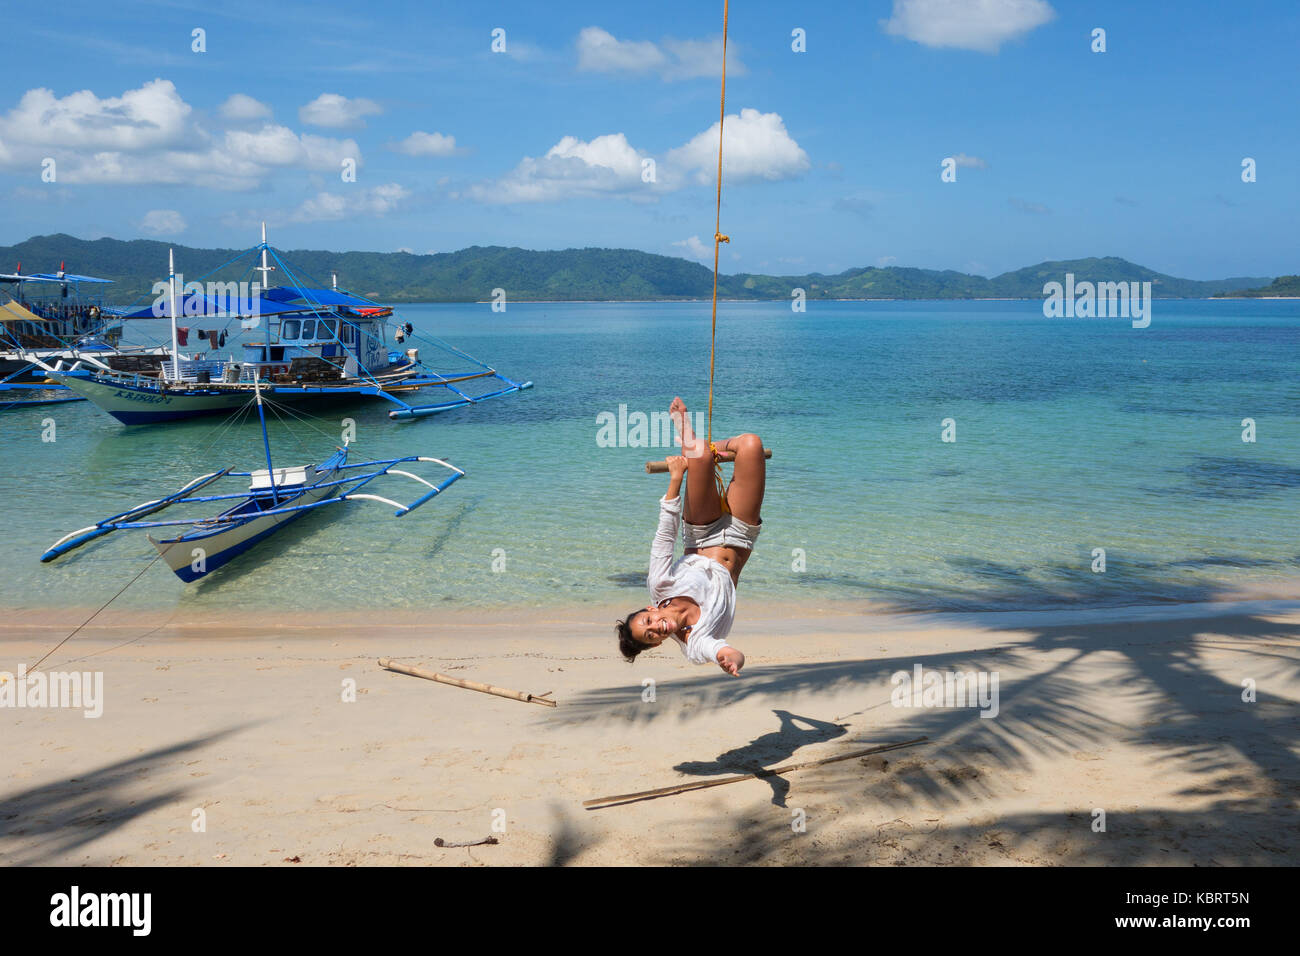 Philippinen - Eine touristische Spaß auf einem Seil schwingen, El Nido Strand, El Nido, Palawan, Philippinen Asien Stockfoto